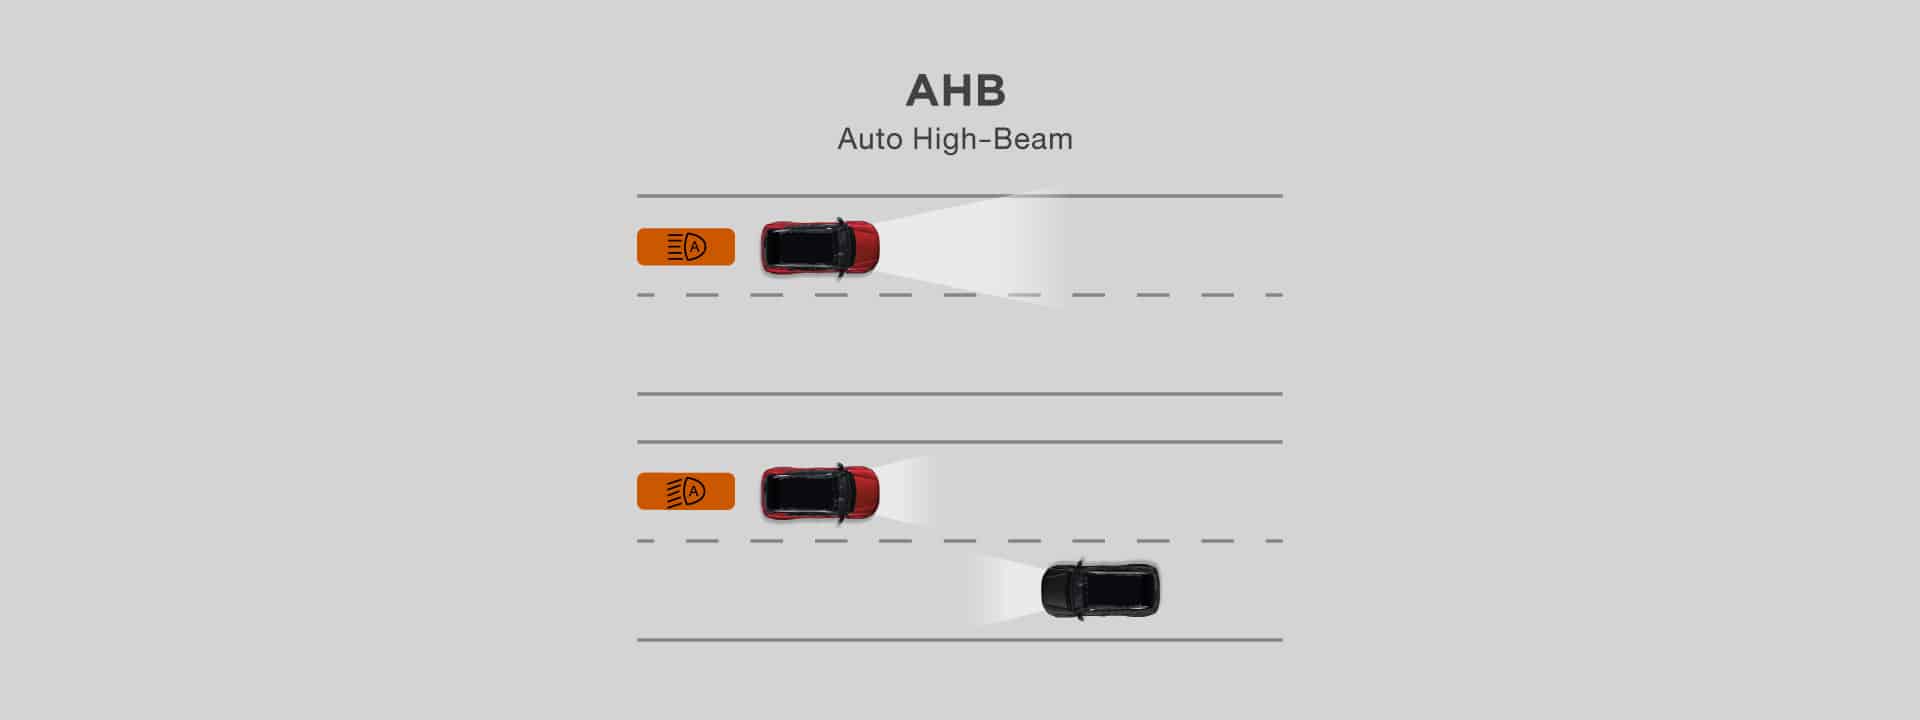 ระบบปรับไฟสูง-ต่ำอัตโนมัติ AHB